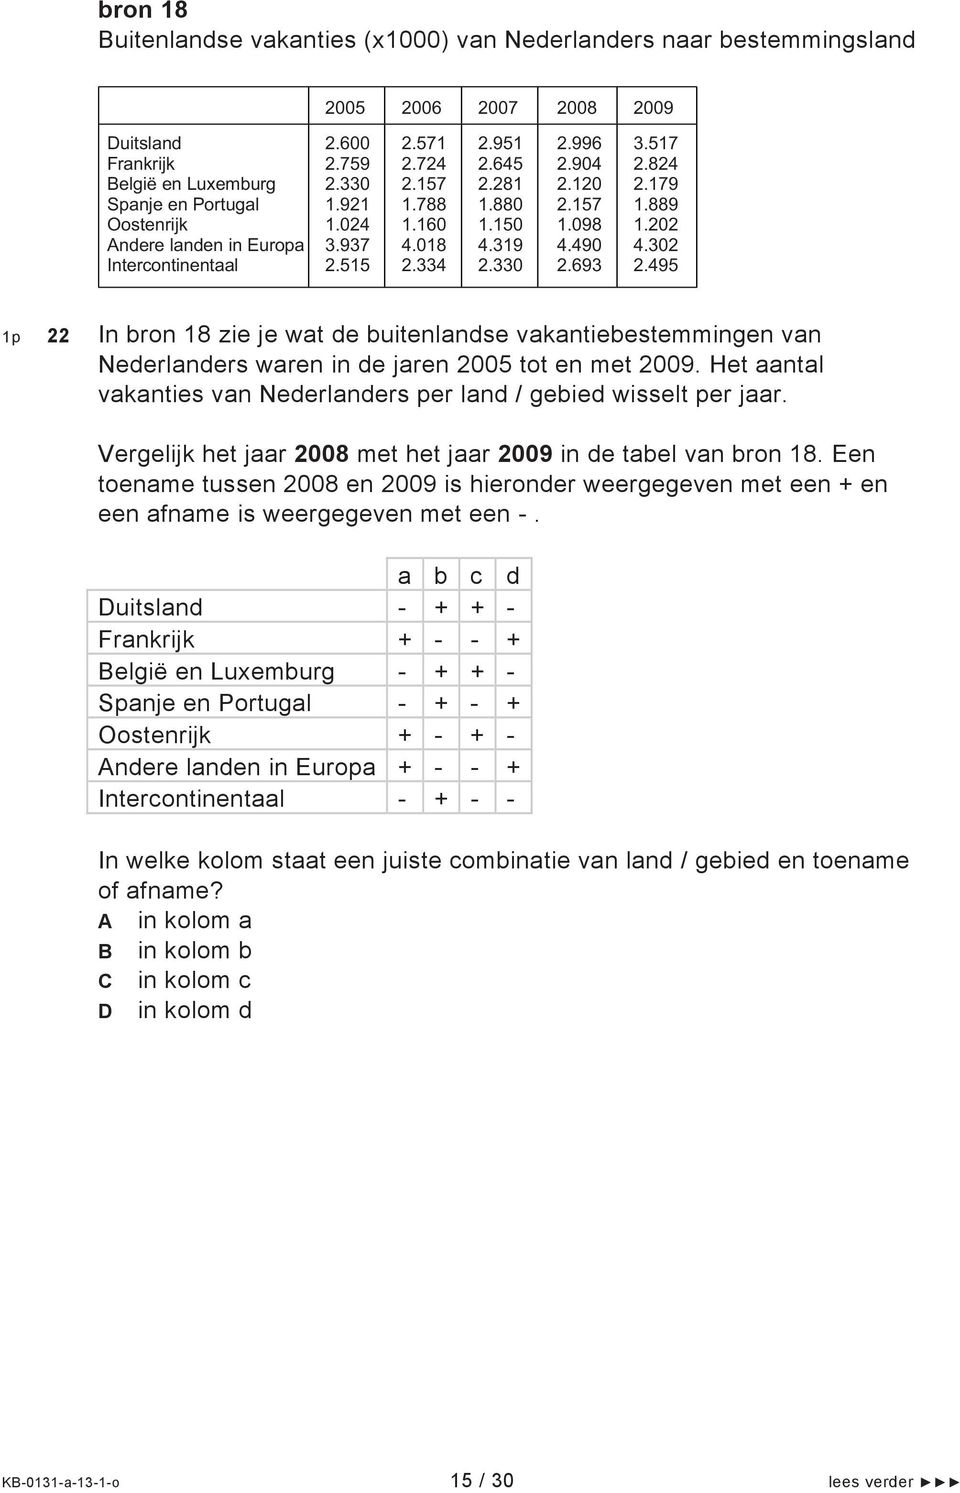 495 1p 22 In bron 18 zie je wat de buitenlandse vakantiebestemmingen van Nederlanders waren in de jaren 25 tot en met 29. Het aantal vakanties van Nederlanders per land / gebied wisselt per jaar.